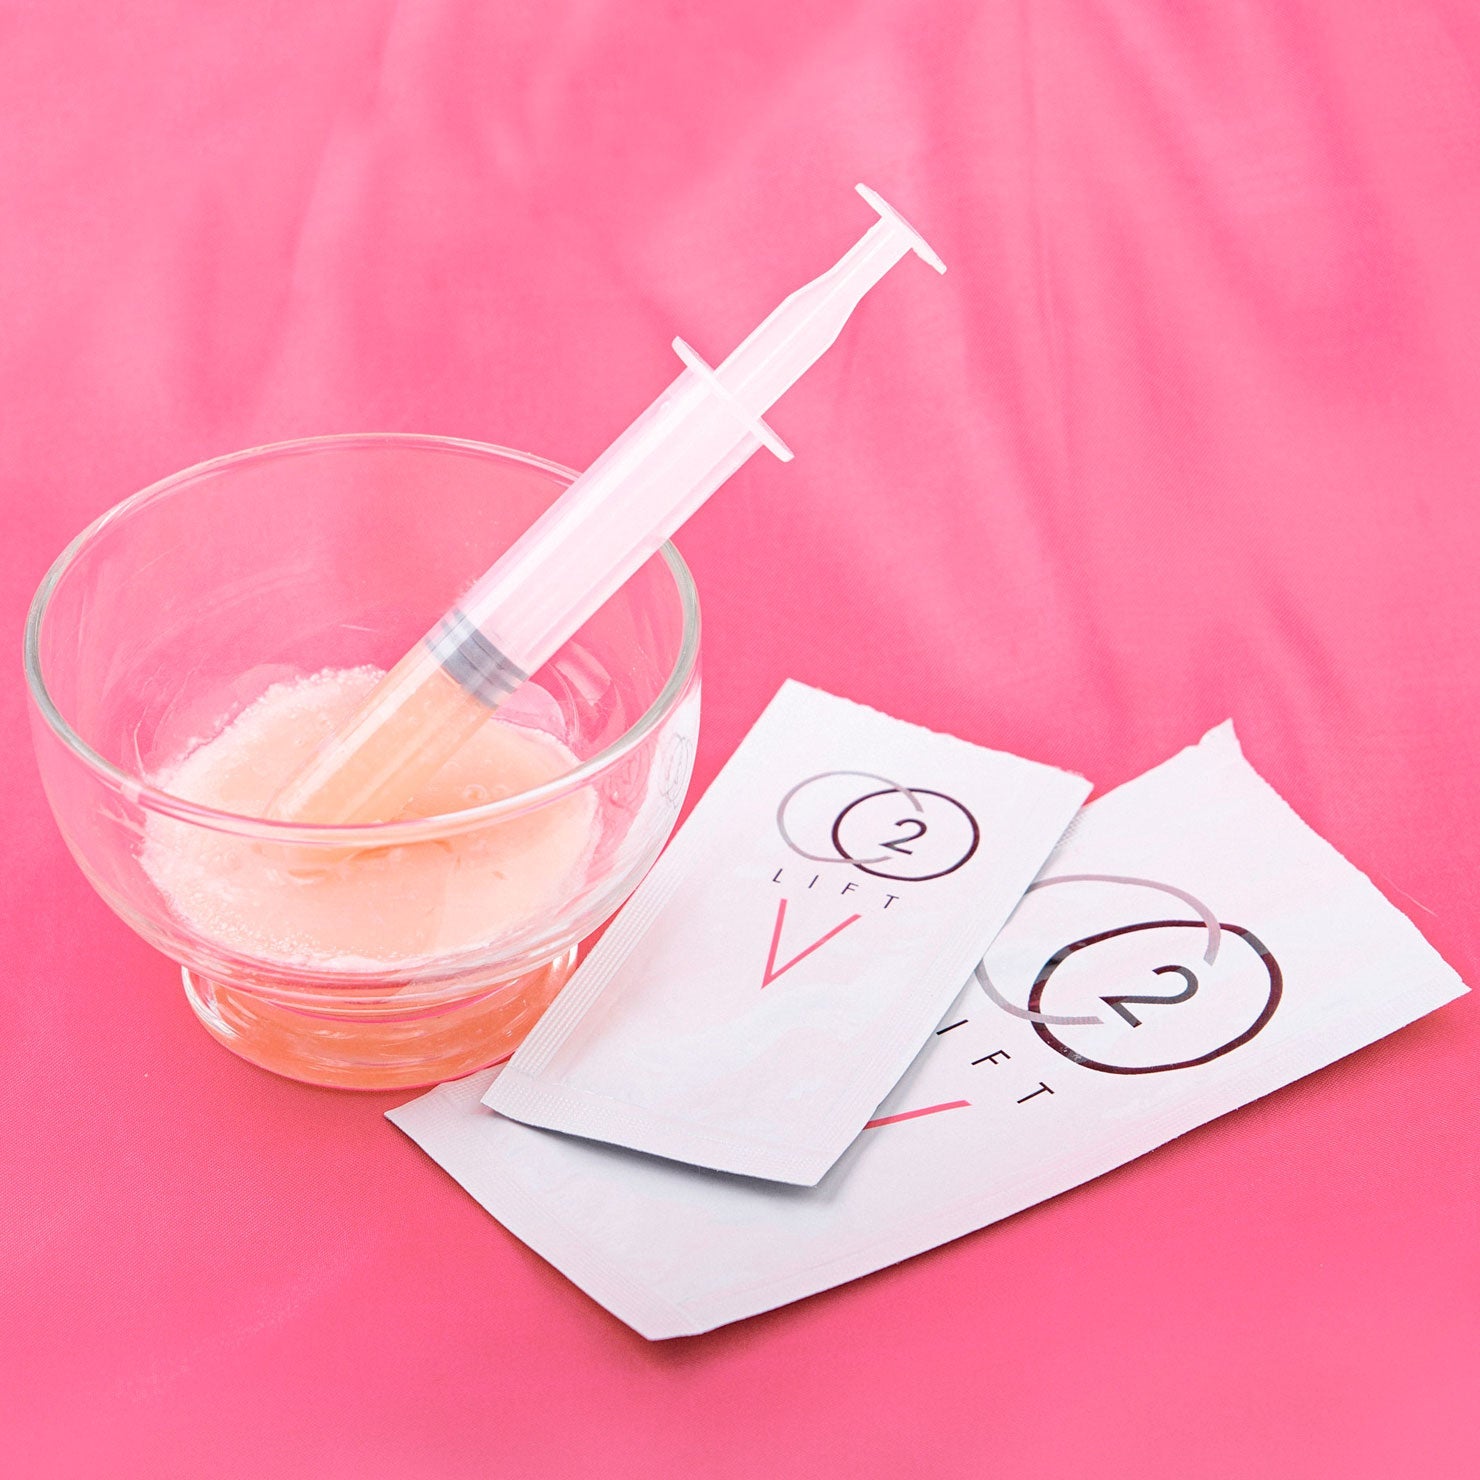 vagina tightening gel